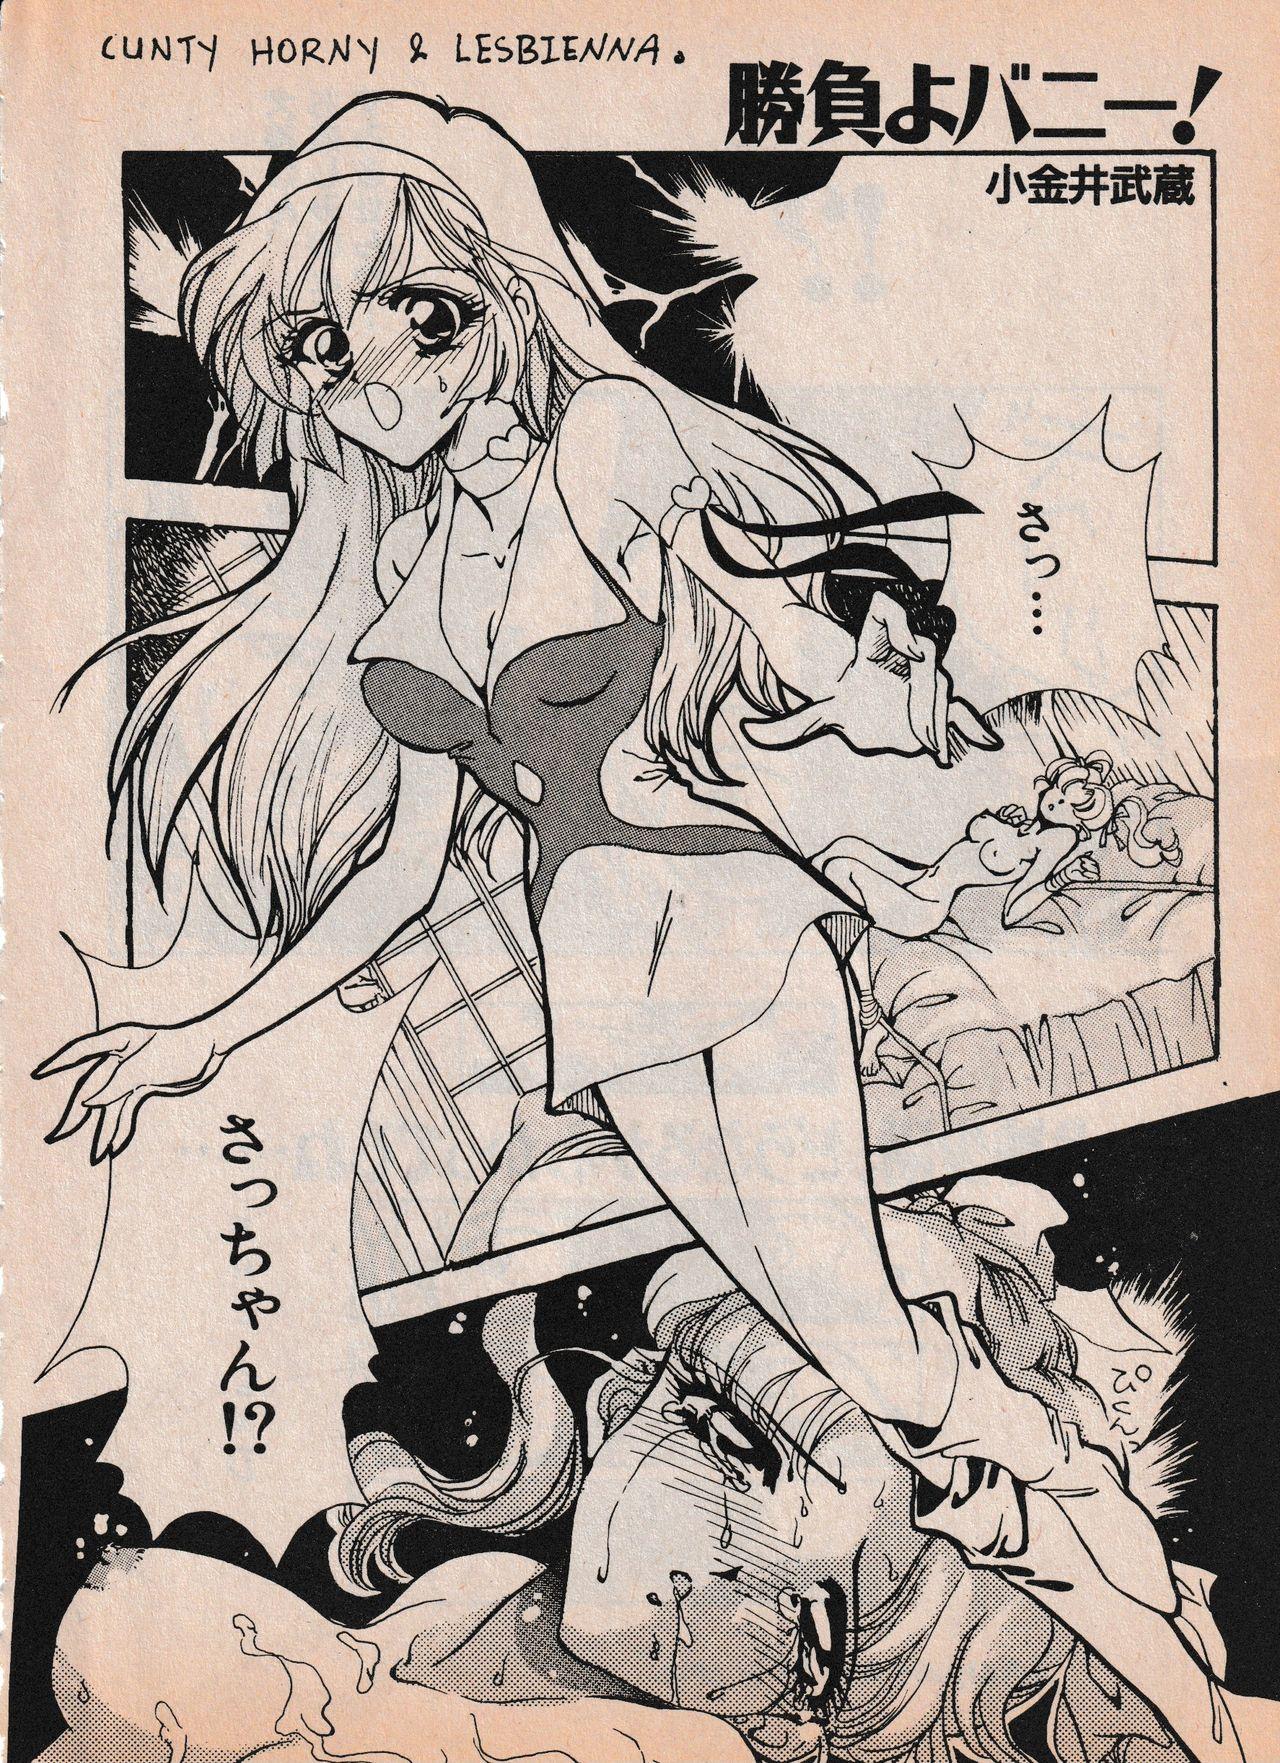 Sailor X vol. 4 - Sailor X vs. Cunty Horny! 96